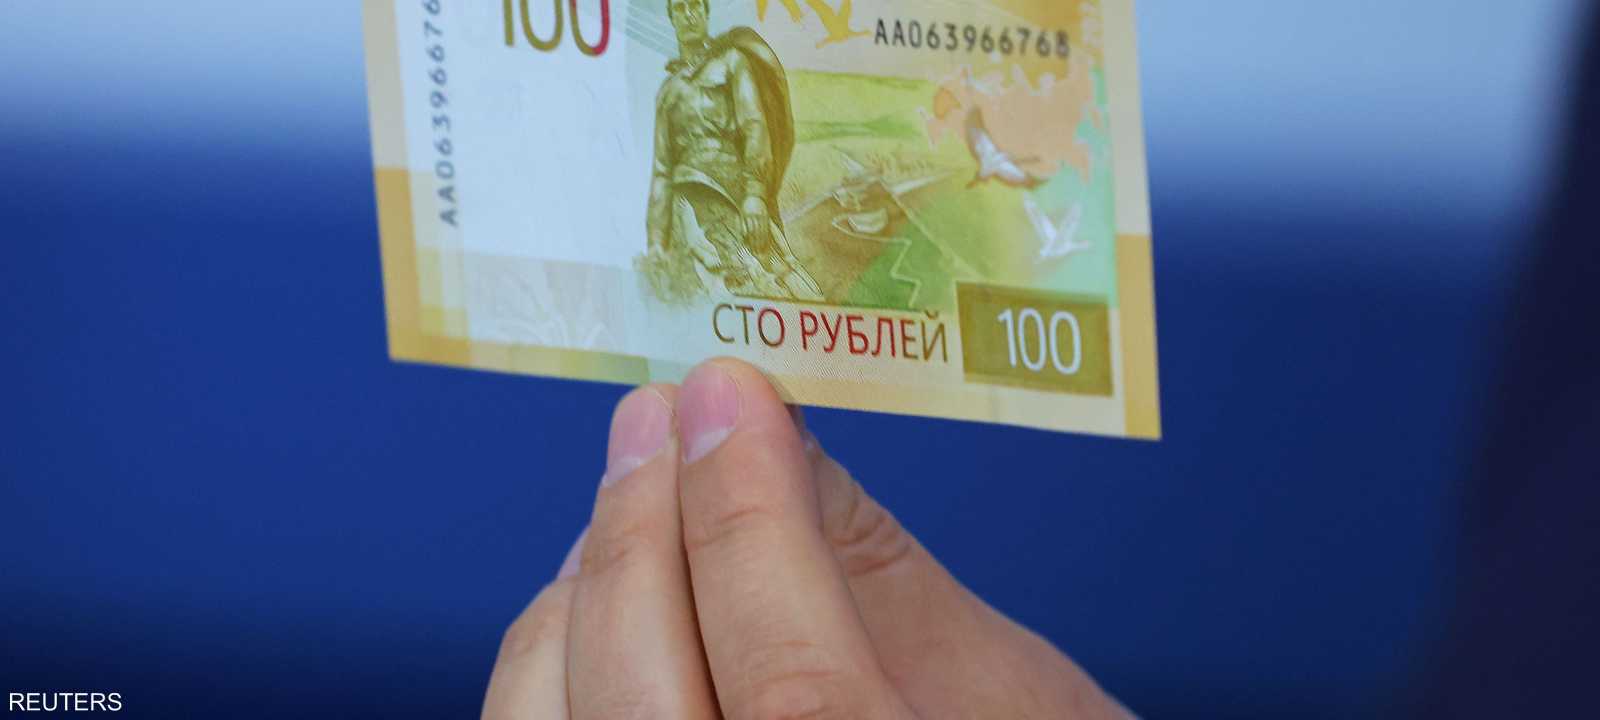 ورقة نقدية جديدة طرحتها روسيا